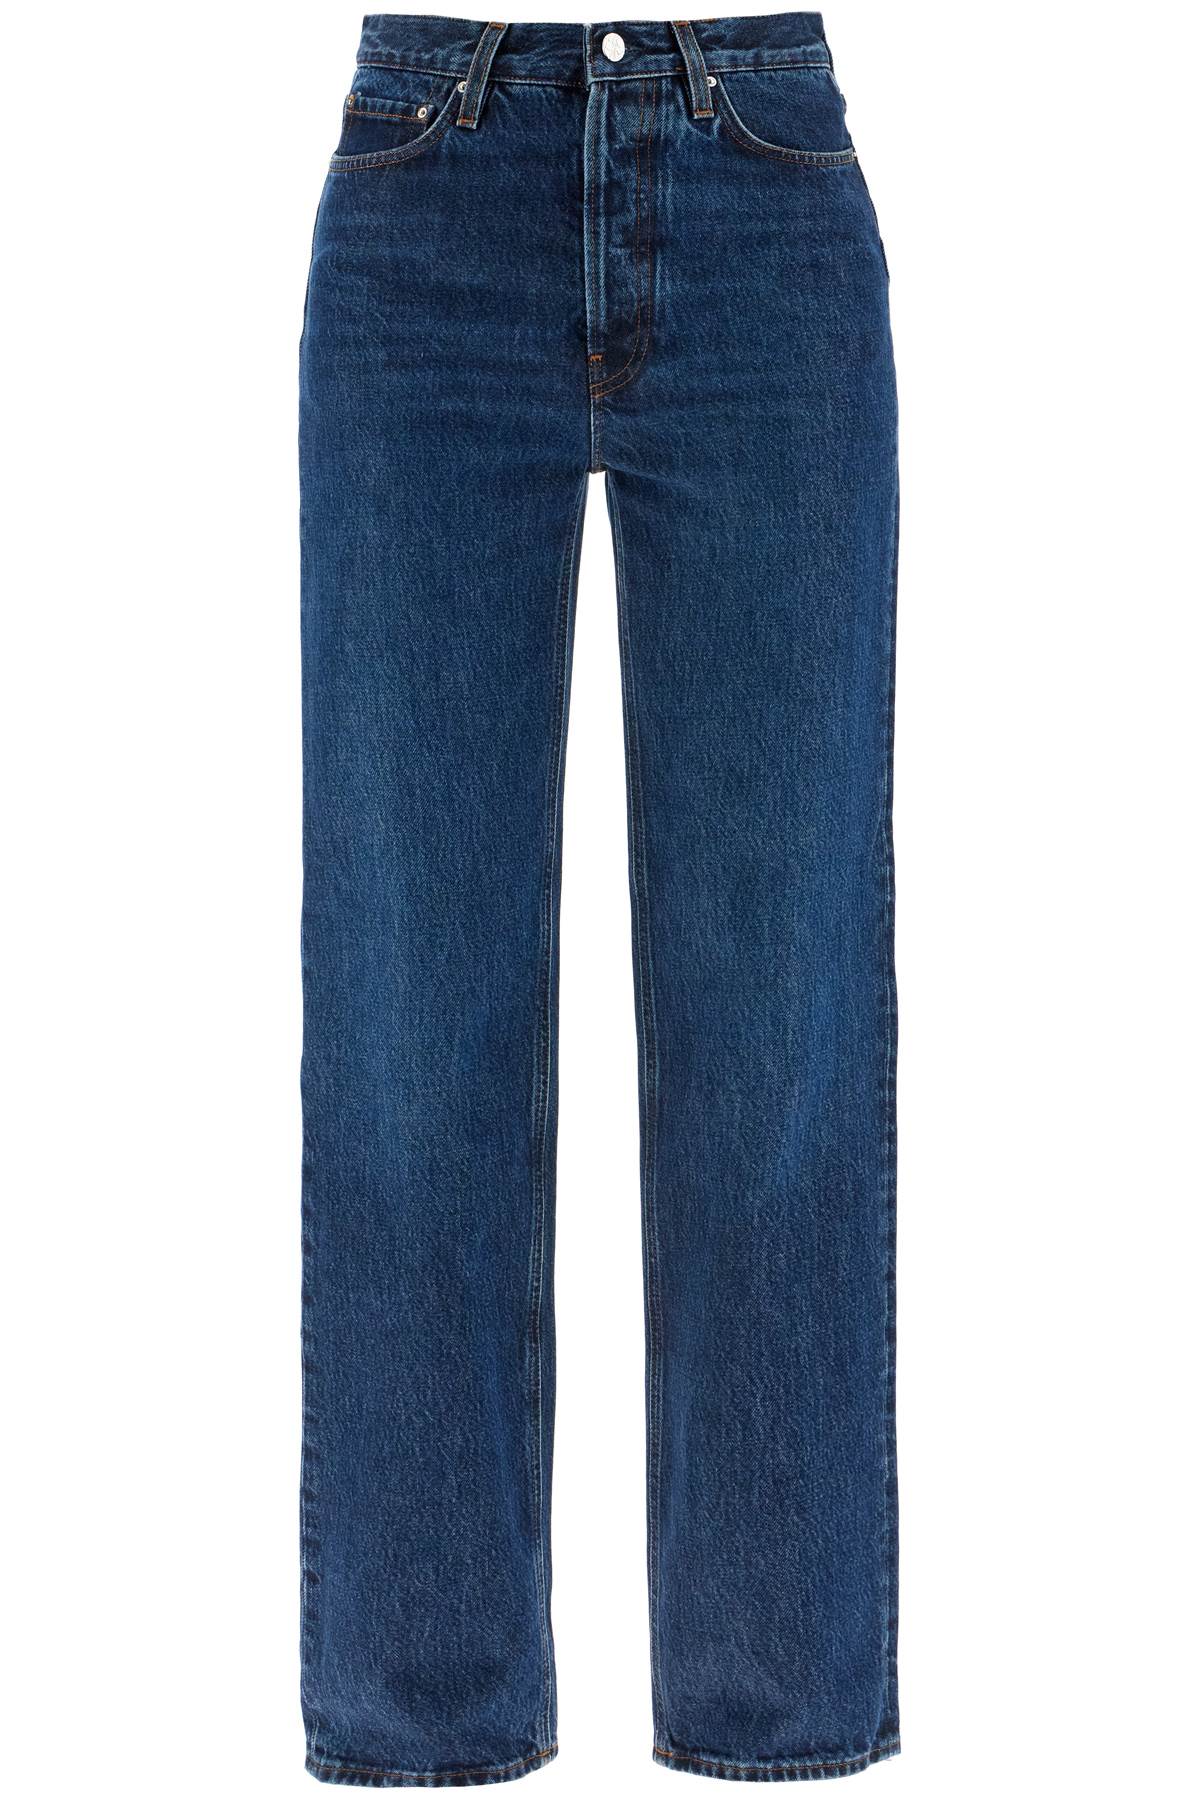 Toteme TOTEME organic denim classic cut jeans